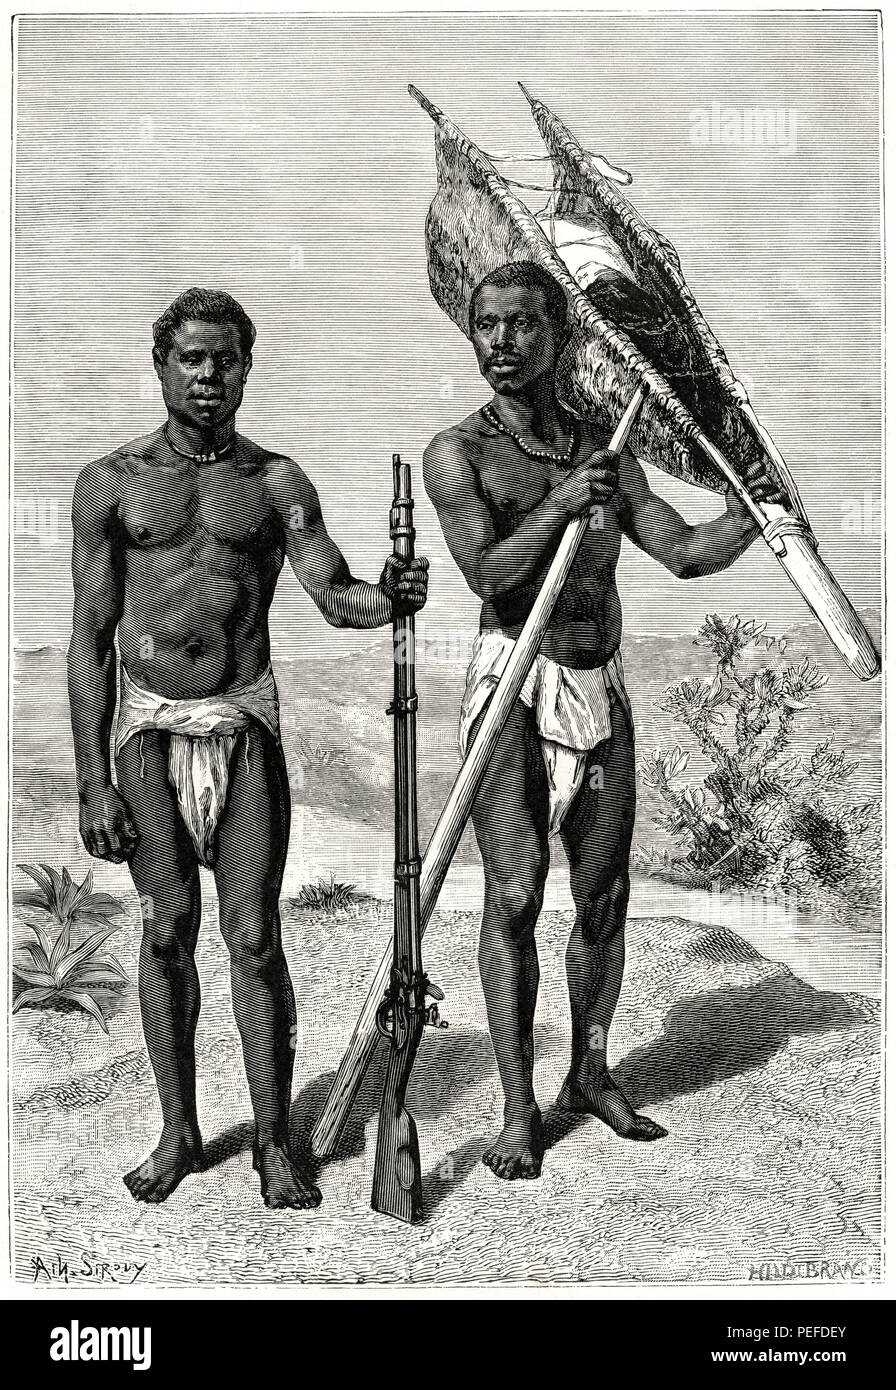 Los cazadores de la tribu Kroomen, Liberia, la ilustración de Sirouy/Hilldibrand, Harper's Magazine mensual, 1879 Foto de stock